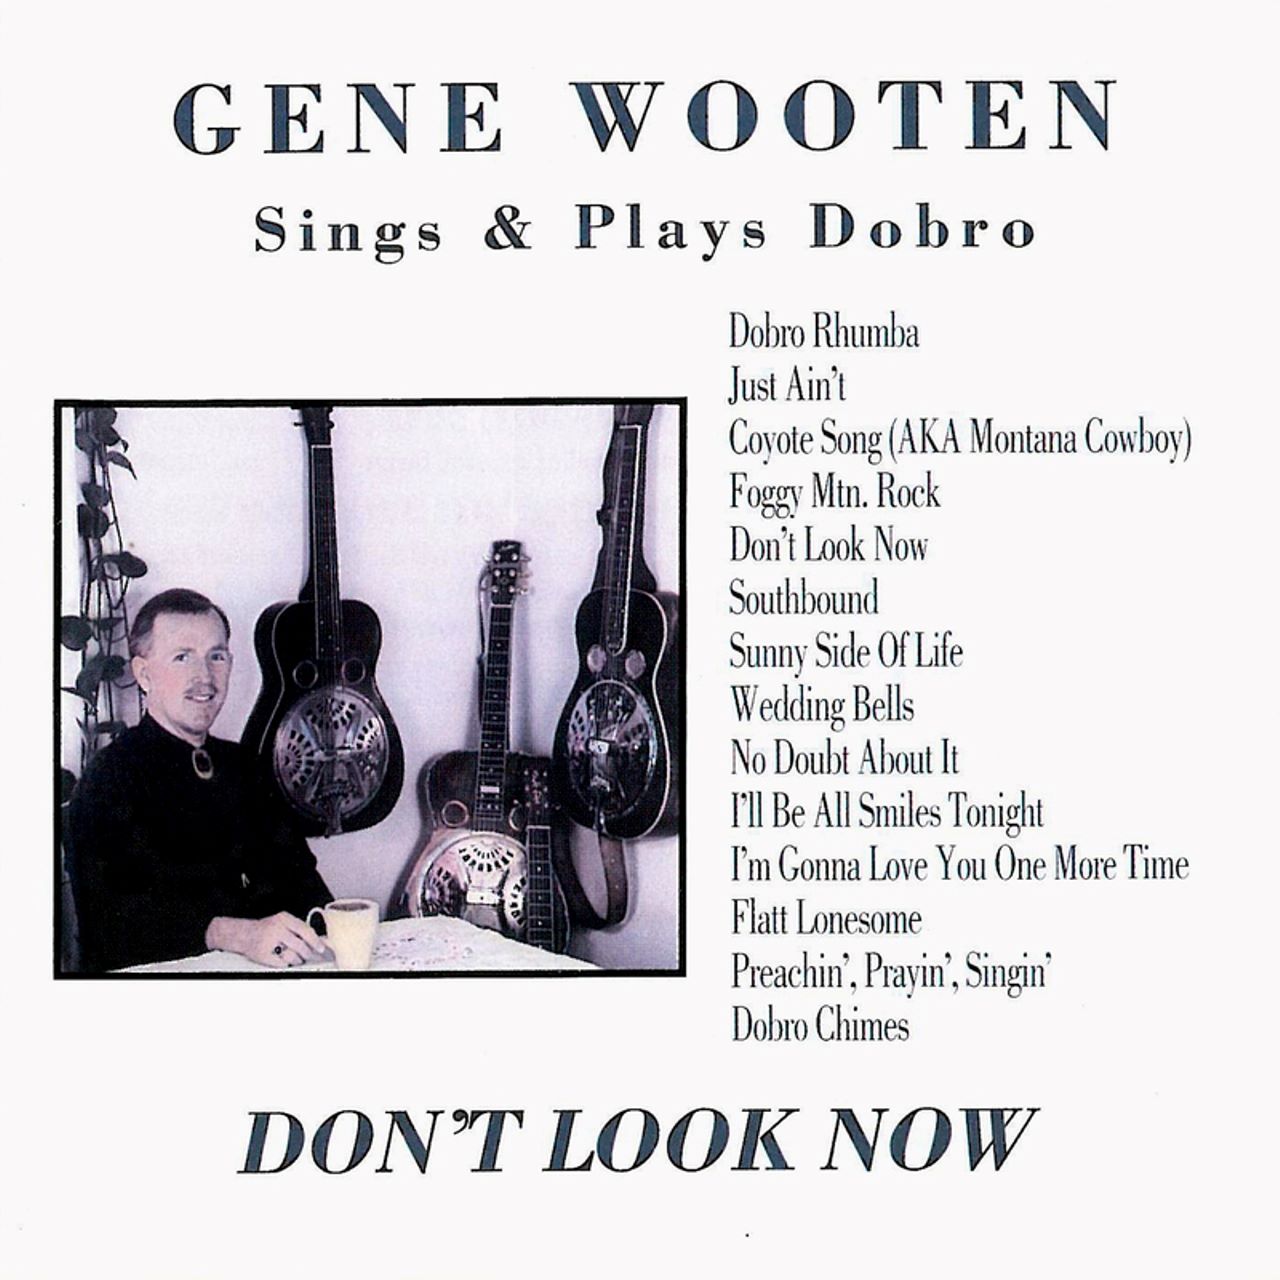 Gene Wooten - Don't Look Now cover album